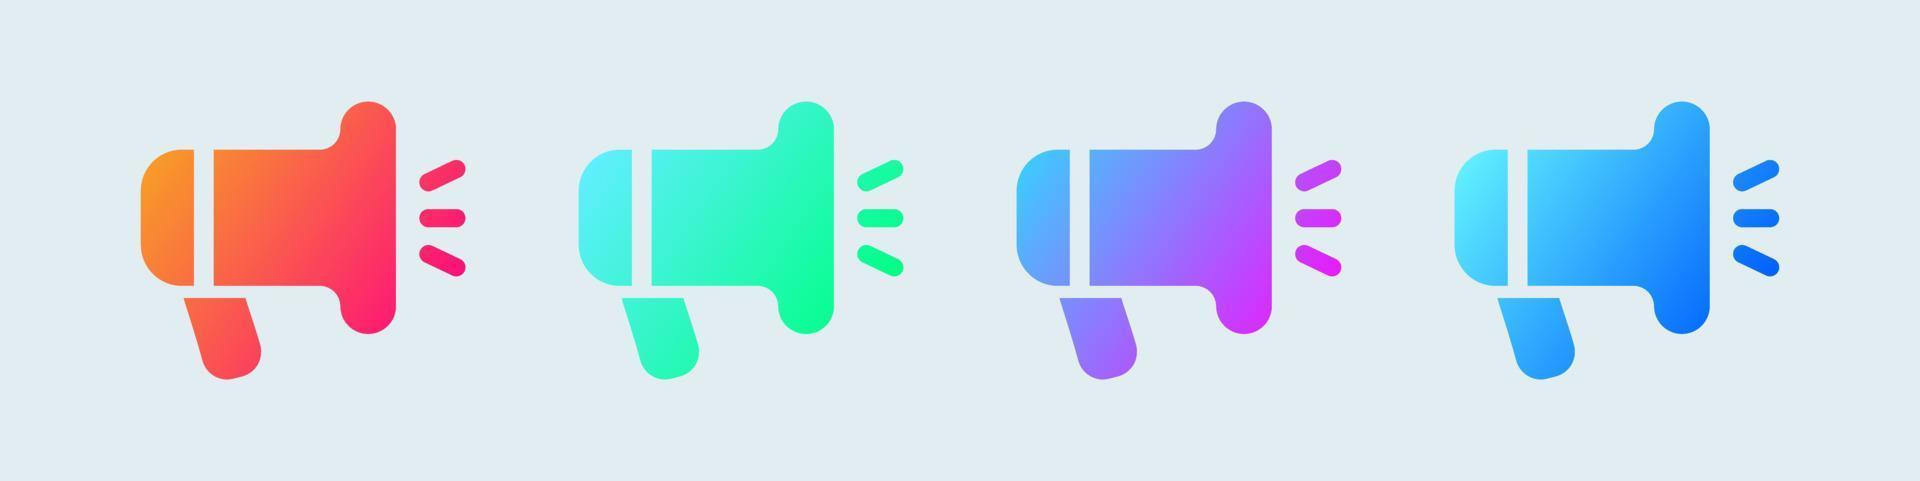 ícone sólido de megafone em cores gradientes. ilustração em vetor sinal alto-falante.